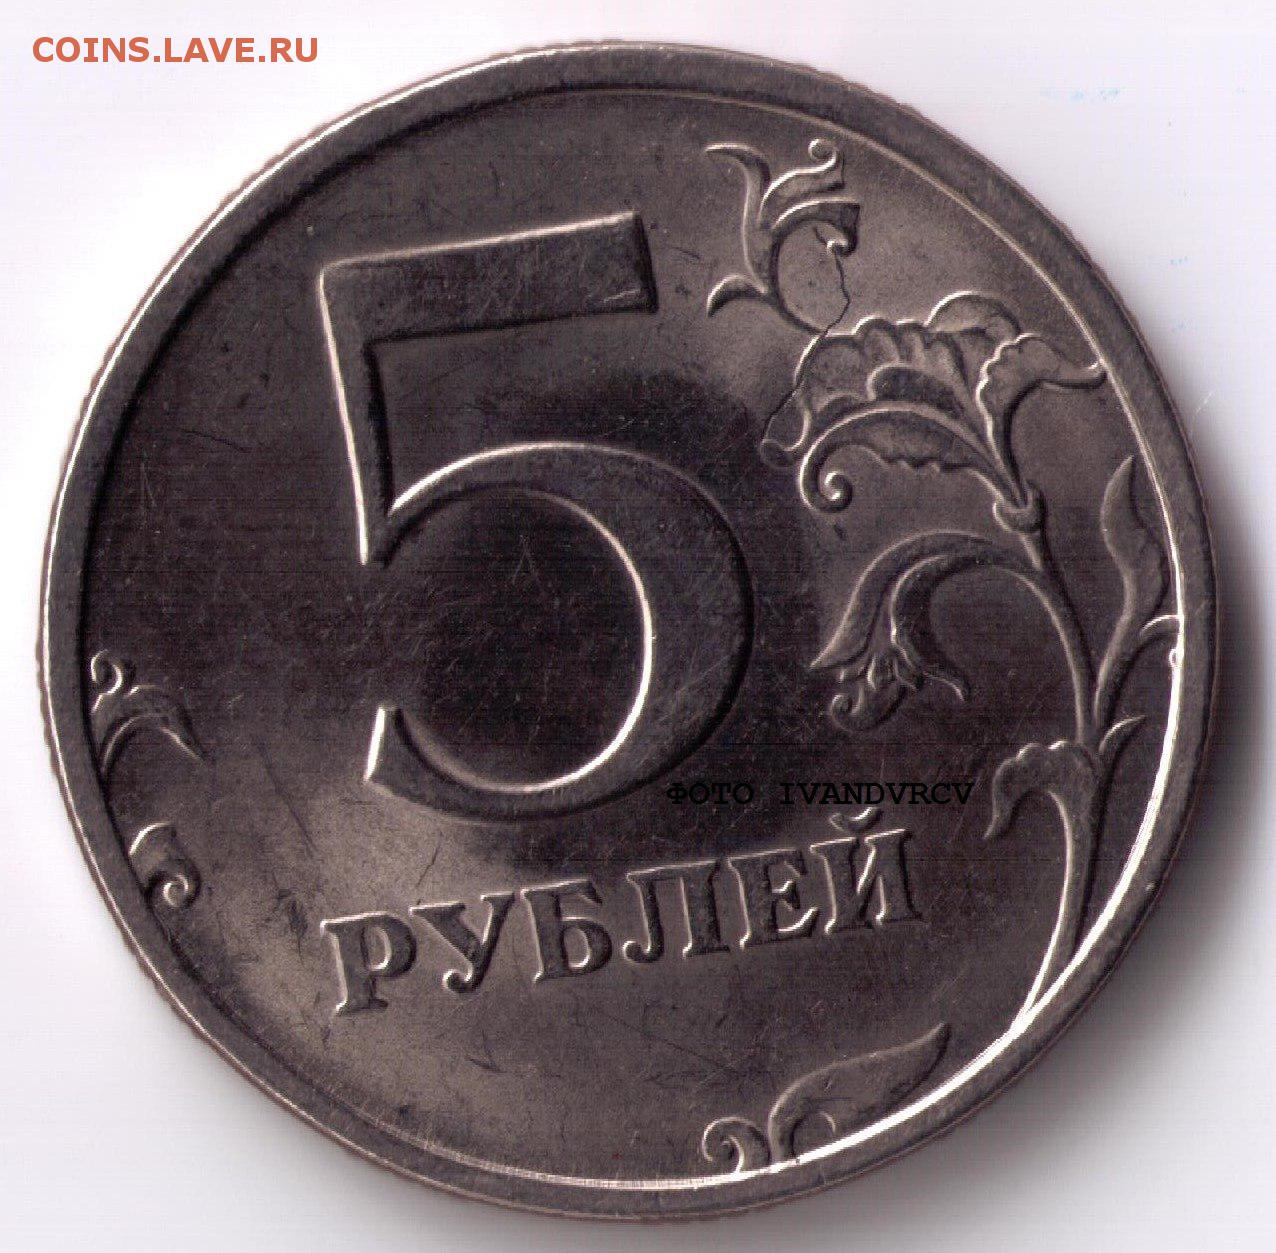 Продам 5 рублей 1997. Соберите монеты. 5 Рублей 1997 самая дорогая версия. Монета 5 рублей 1997 с маленьким значком. 5 Рублей 1997 СССР 70 лет.